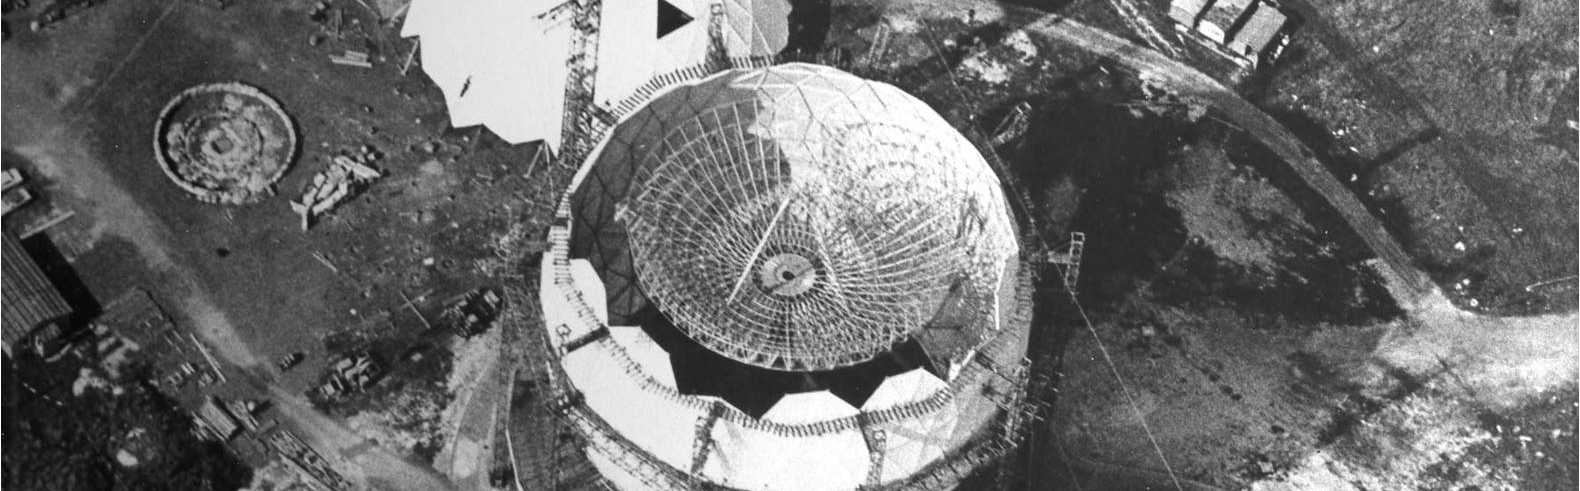 Im Jahr 1968 befand sich das Weltraumbeobachtungsradar TIRA mitten im Bau.